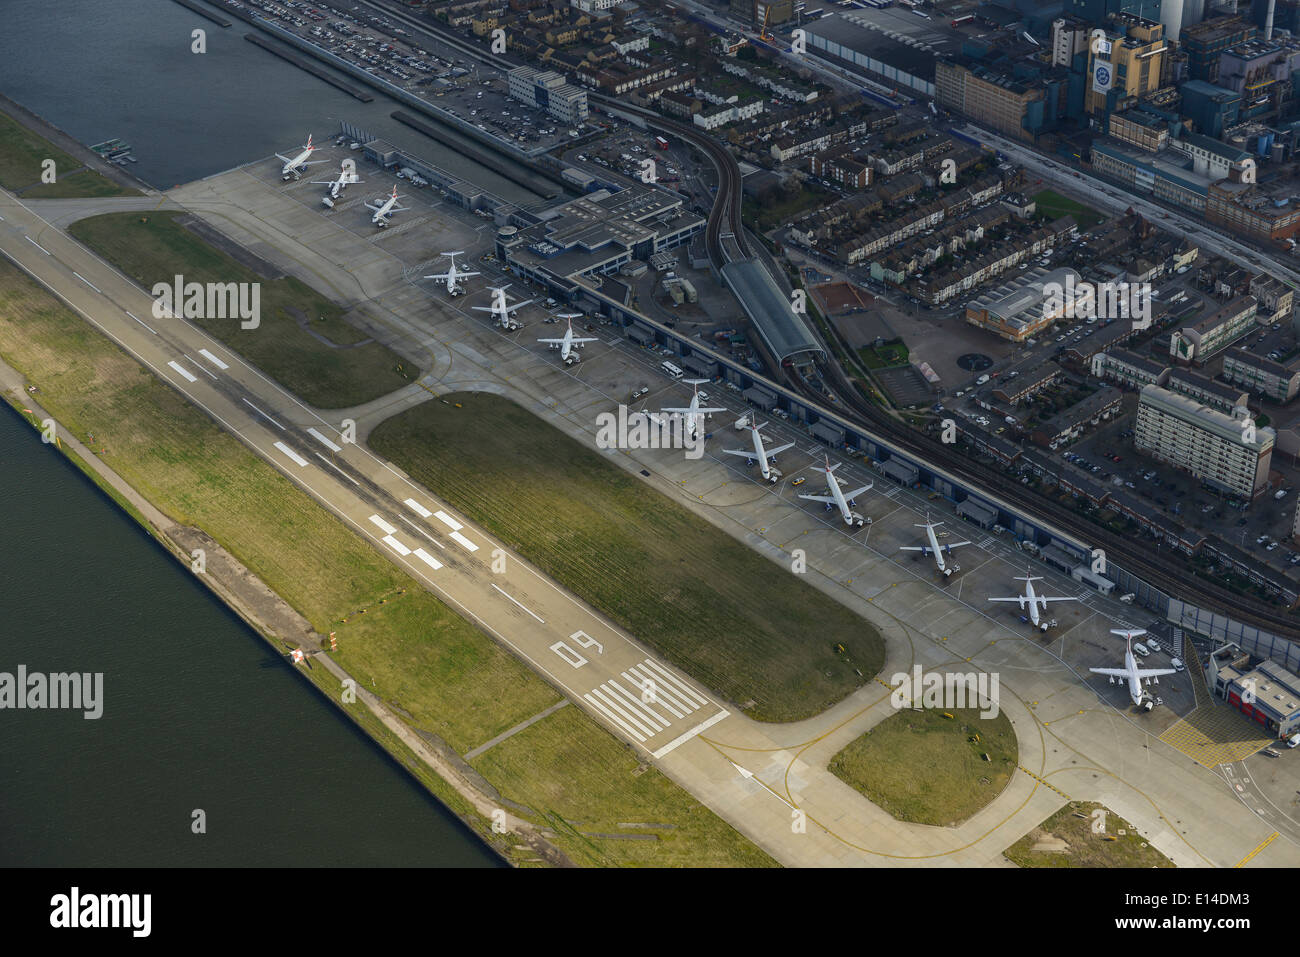 Une vue aérienne de l'aéroport de London City dans l'East End de Londres UK Banque D'Images